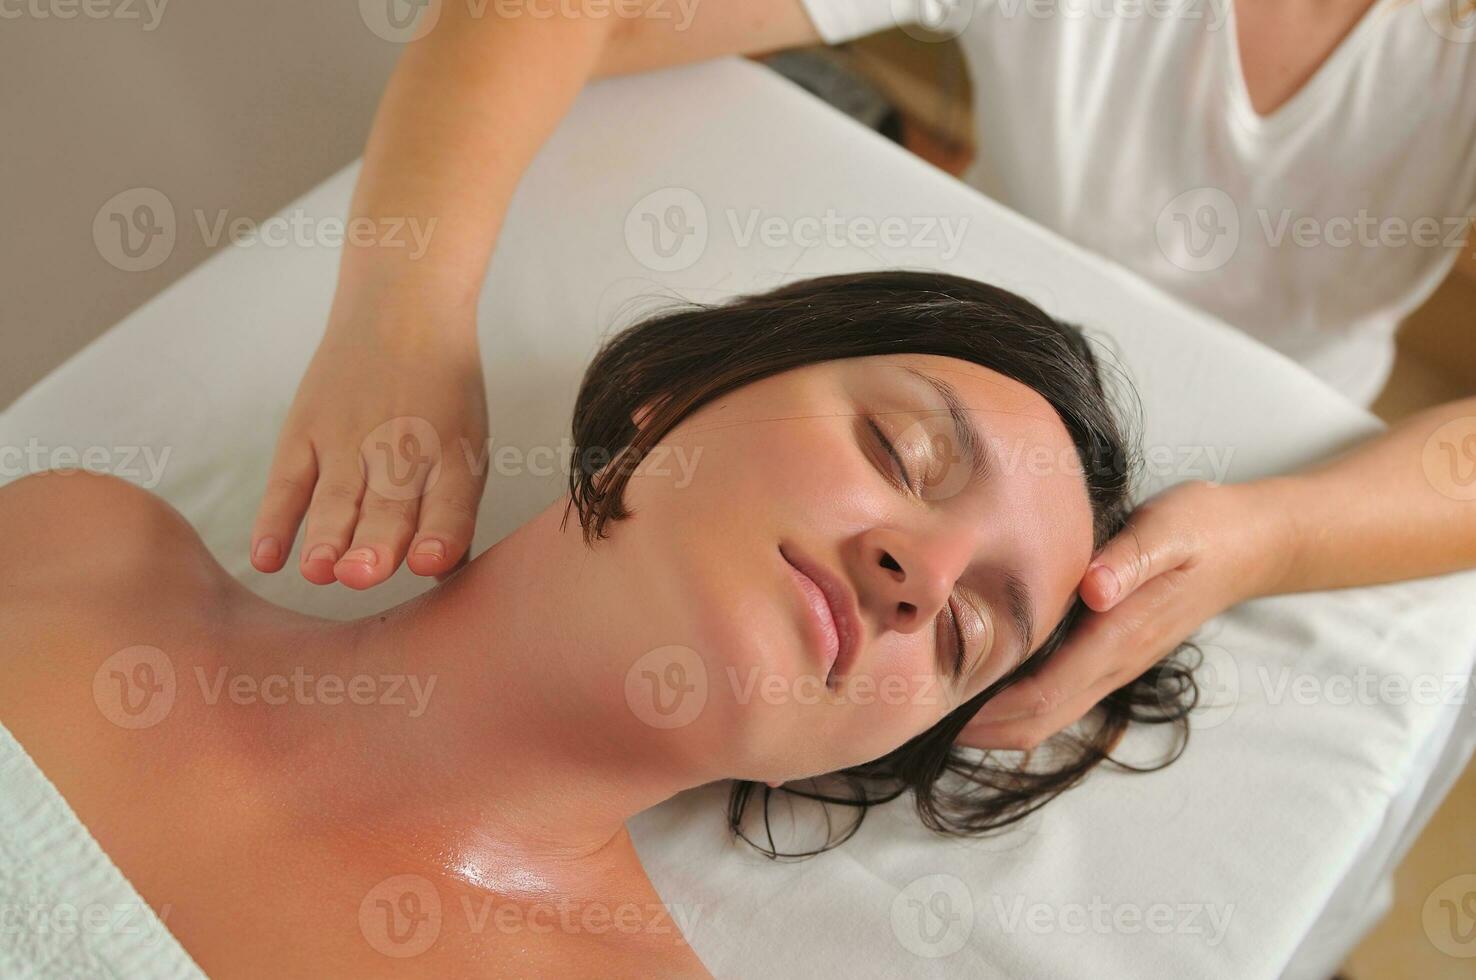 skön kvinna ha massage på spa och wellness Centrum foto